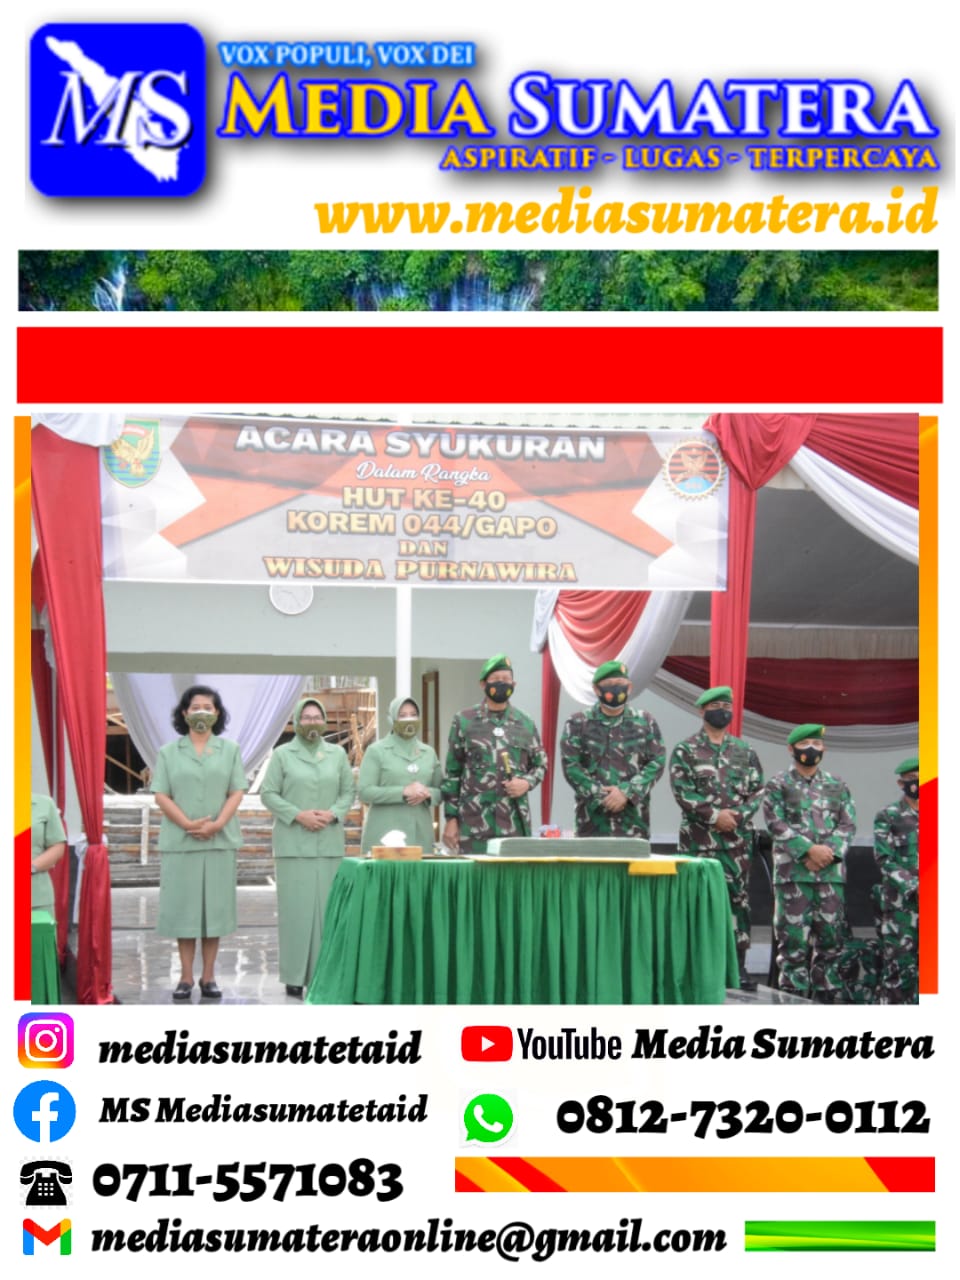 Puncak Hut ke-40 Korem 044/Gapo, 77 Anggota TNI AD Memasuki Masa Pensiun